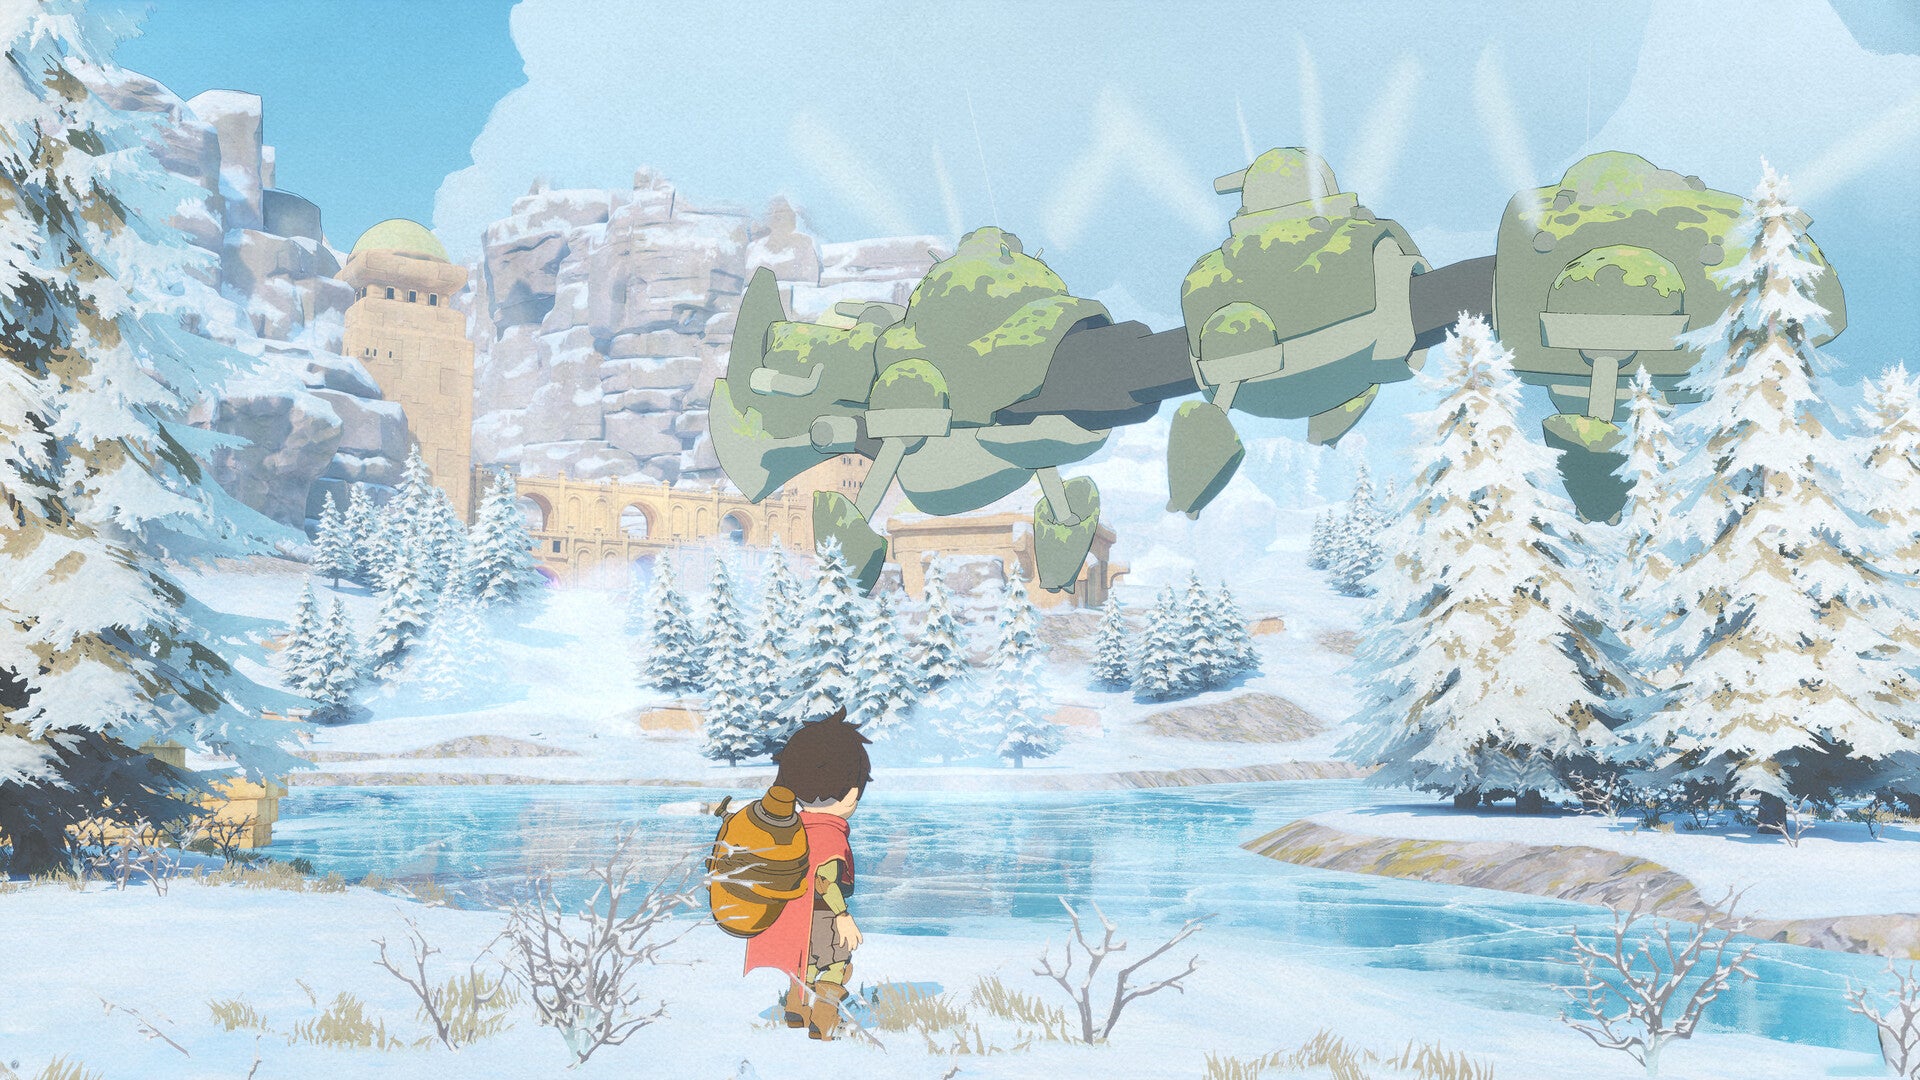 Un ragazzo si trova nella neve, guardando in alto una creatura volante composta da tre grandi bolle circolari. Potrebbe essere una macchina. L'intera scena è disegnata dello stesso modo di un'animazione dello Studio Ghibli, con colori vivaci e morbidi, come se fossero acquerellati.